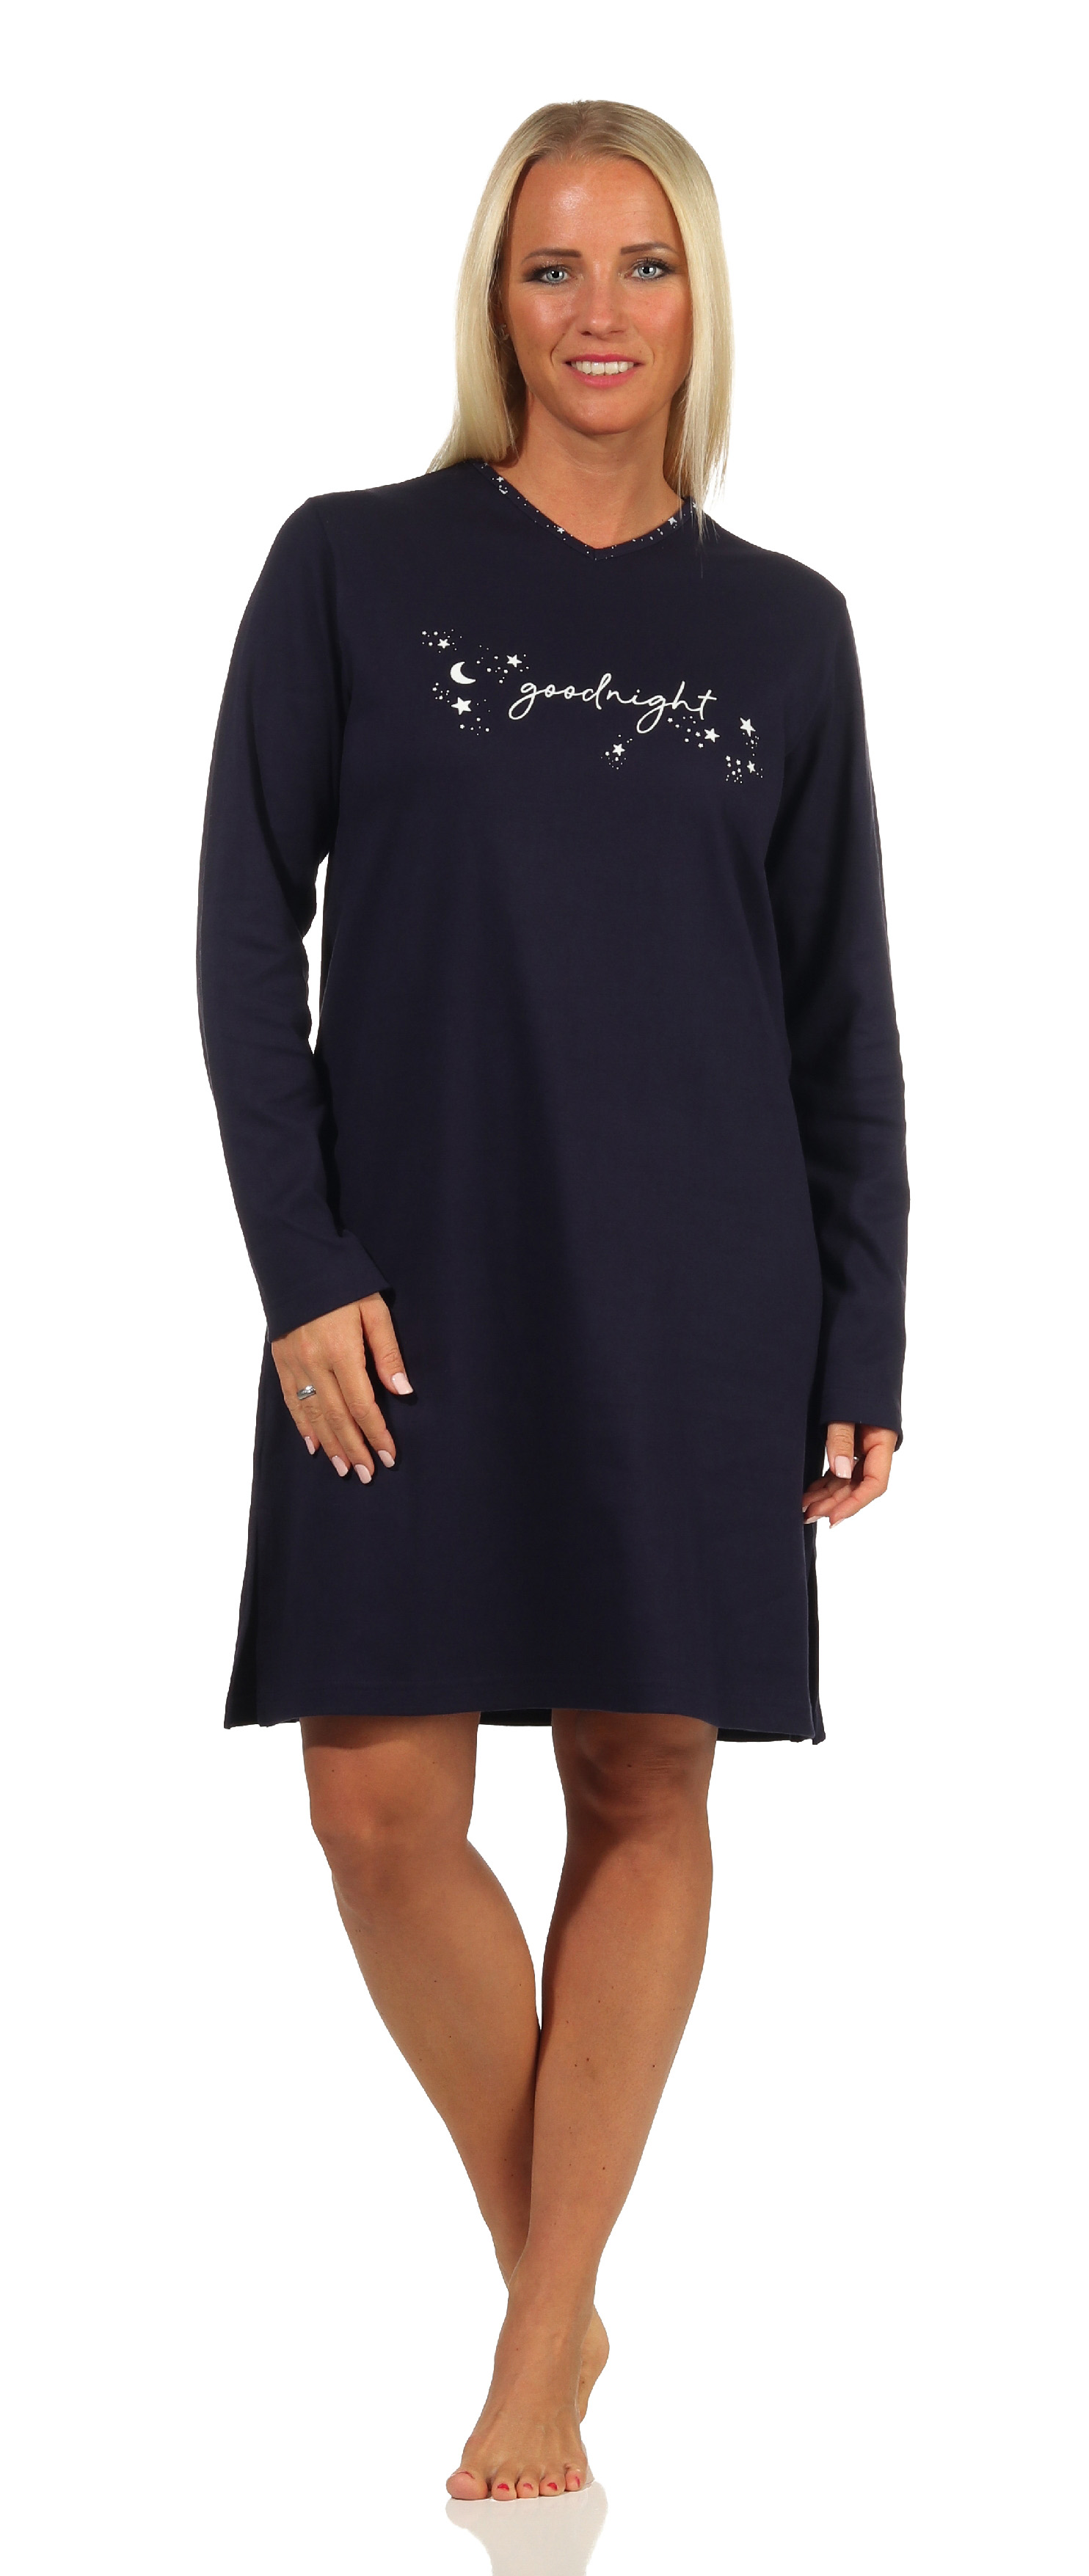 Damen Nachthemd langarm in Kuschel Interlock Qualität in cooler Sterne Optik - 212 213 022